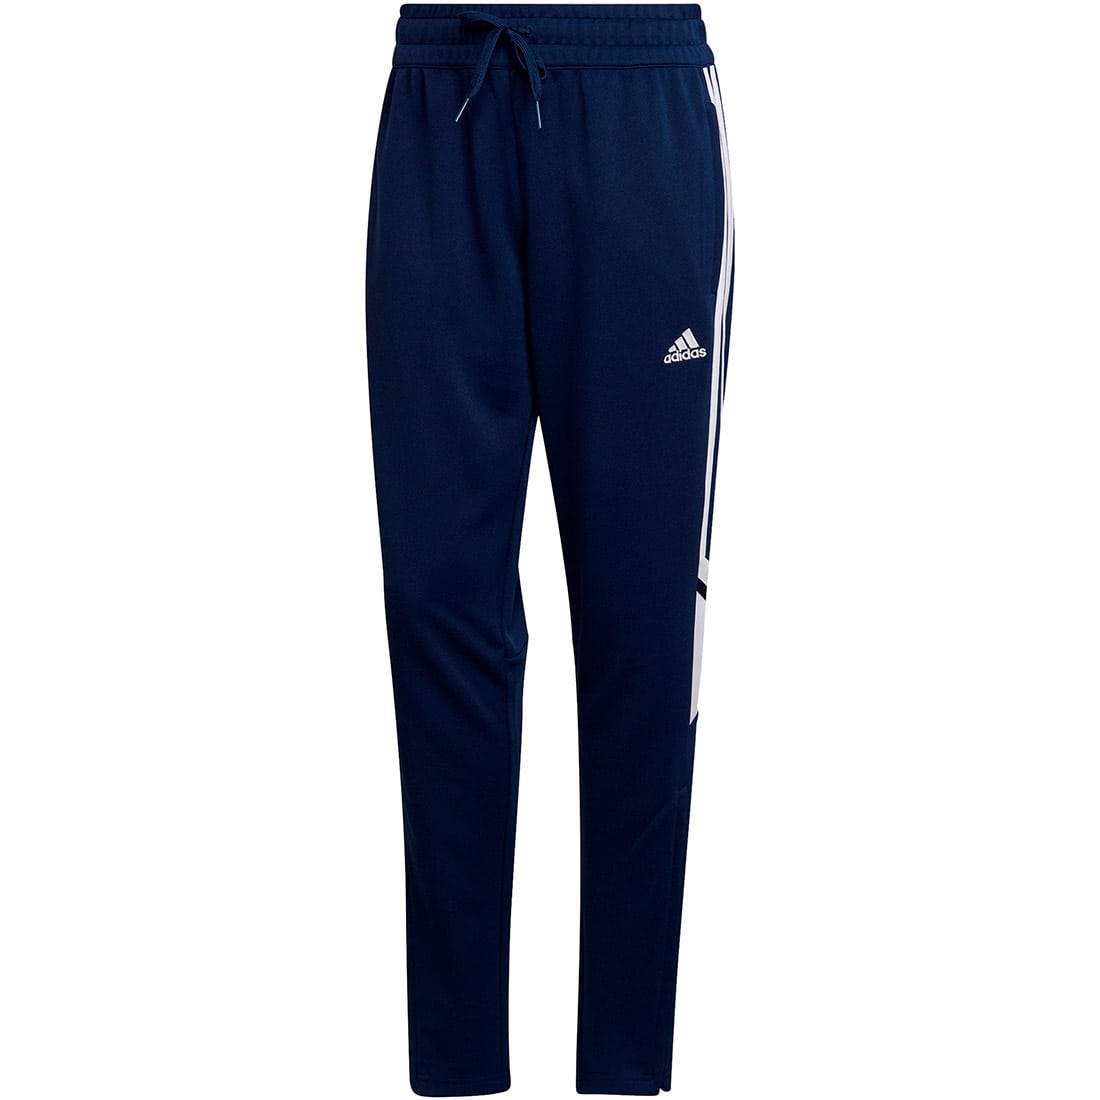 Adidas Damen Condivo kaufen 22 online blau-weiß Trainingshose